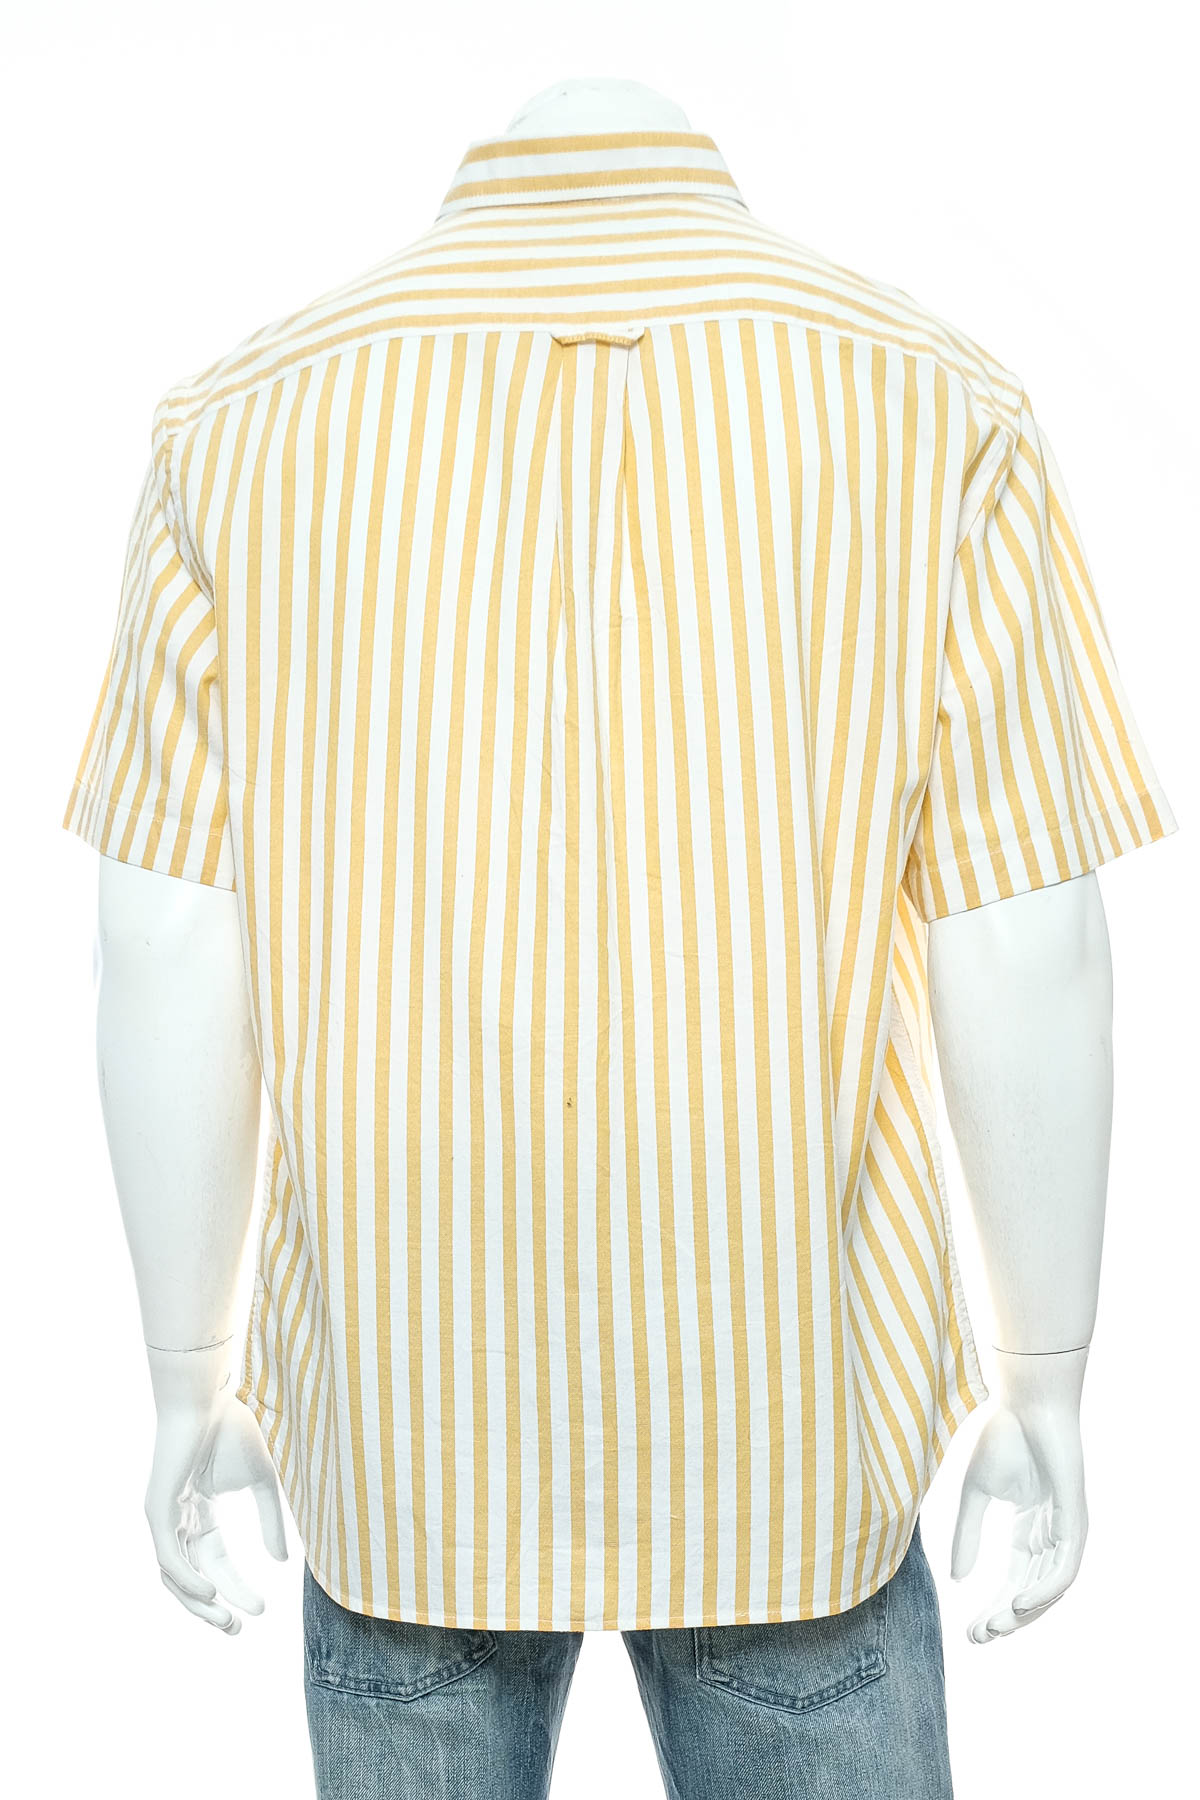 Ανδρικό πουκάμισο - OLD NAVY - 1